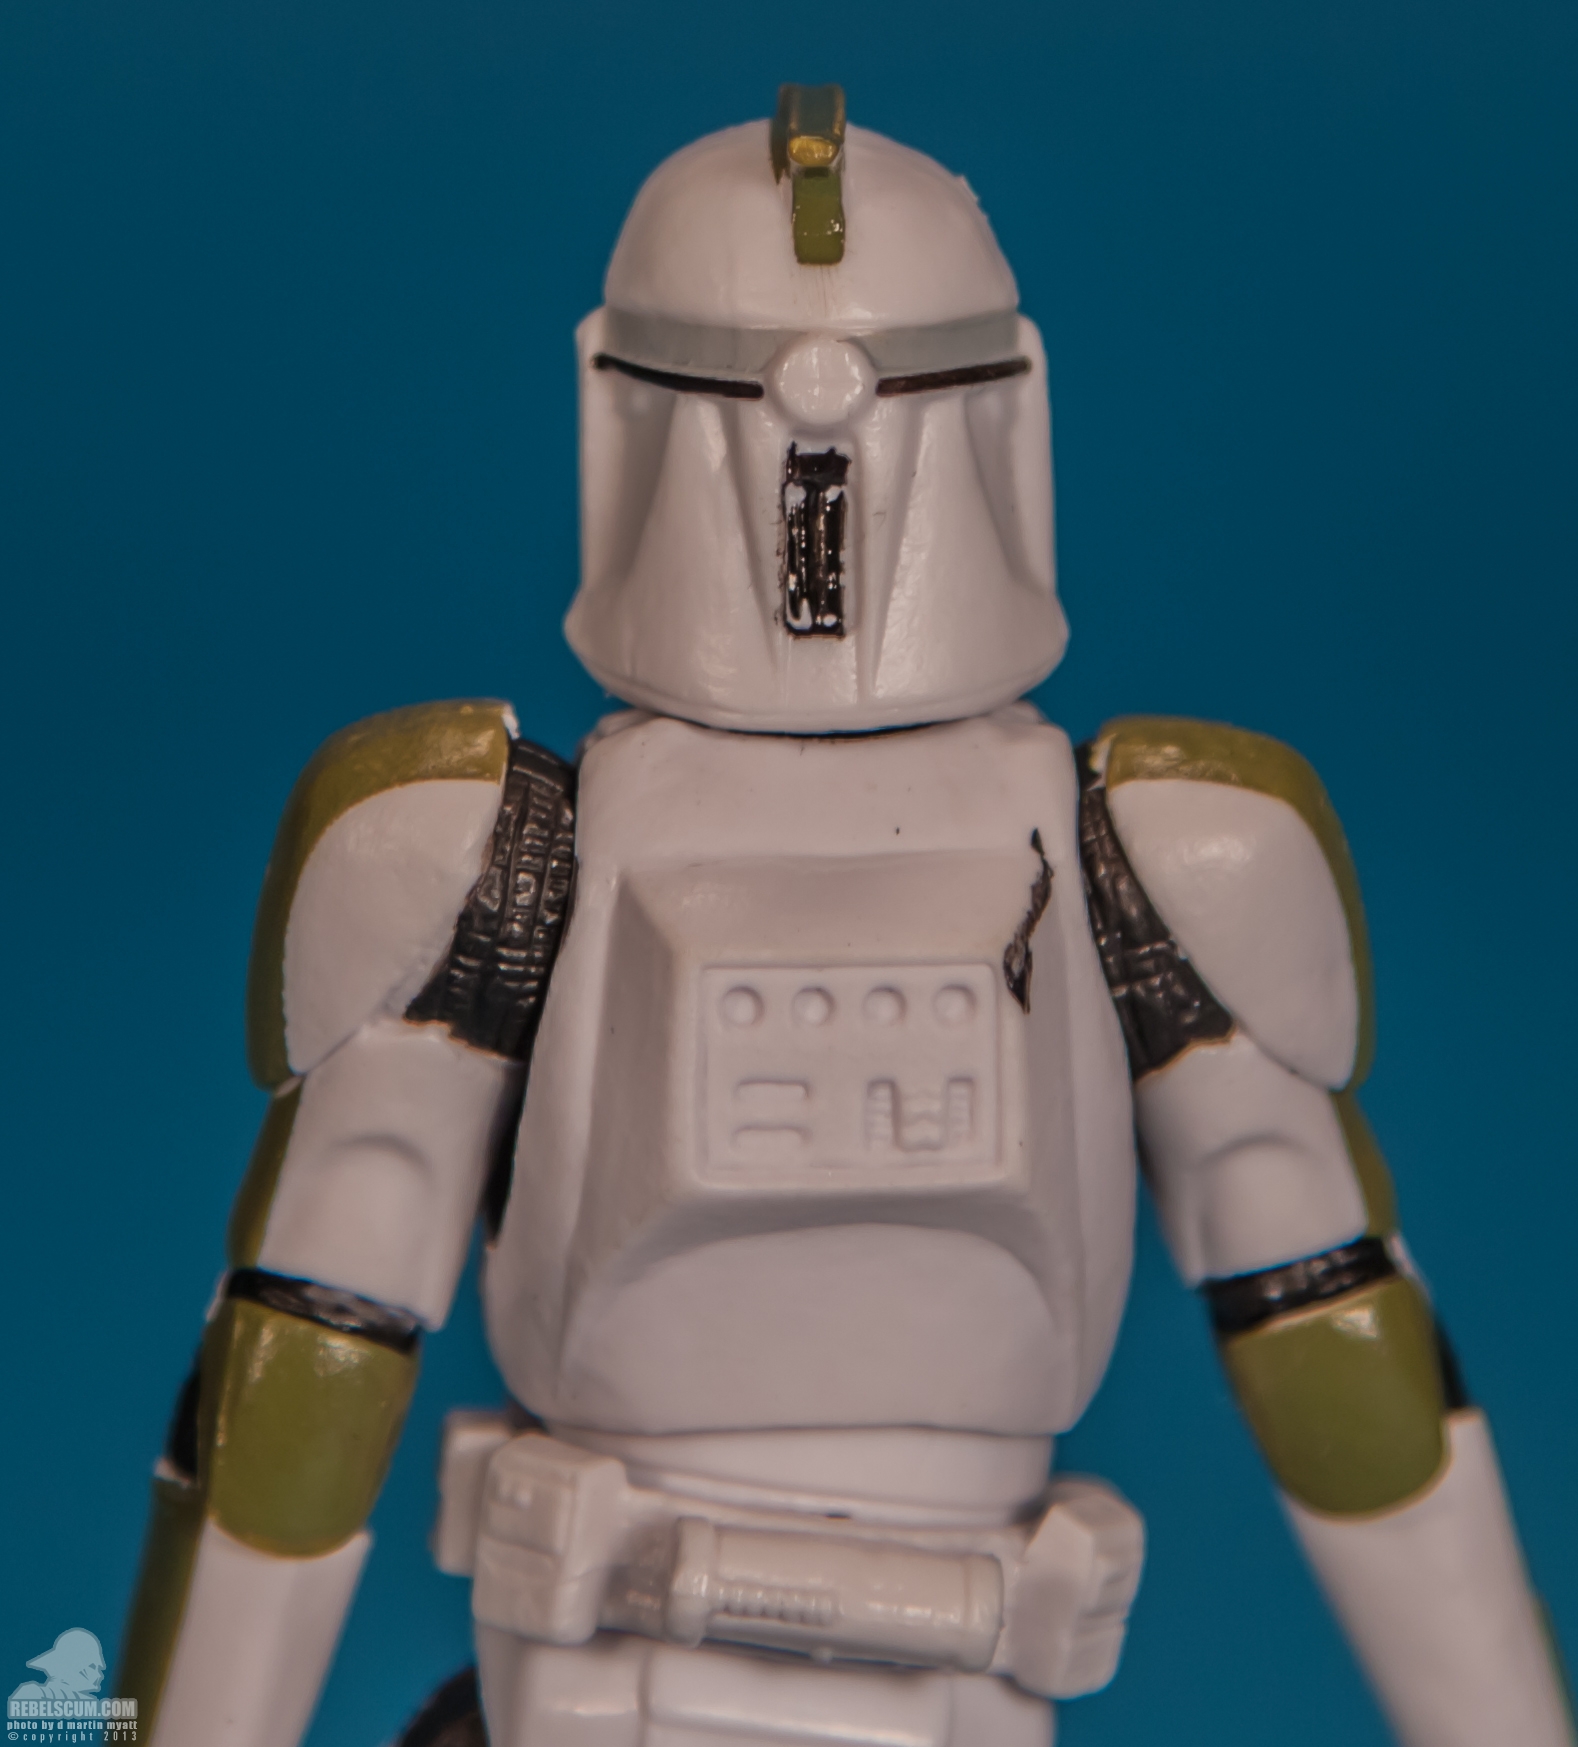 The-Black-Series-Star-Wars-Hasbro-02-Clone-Trooper-Sergeant-012.jpg